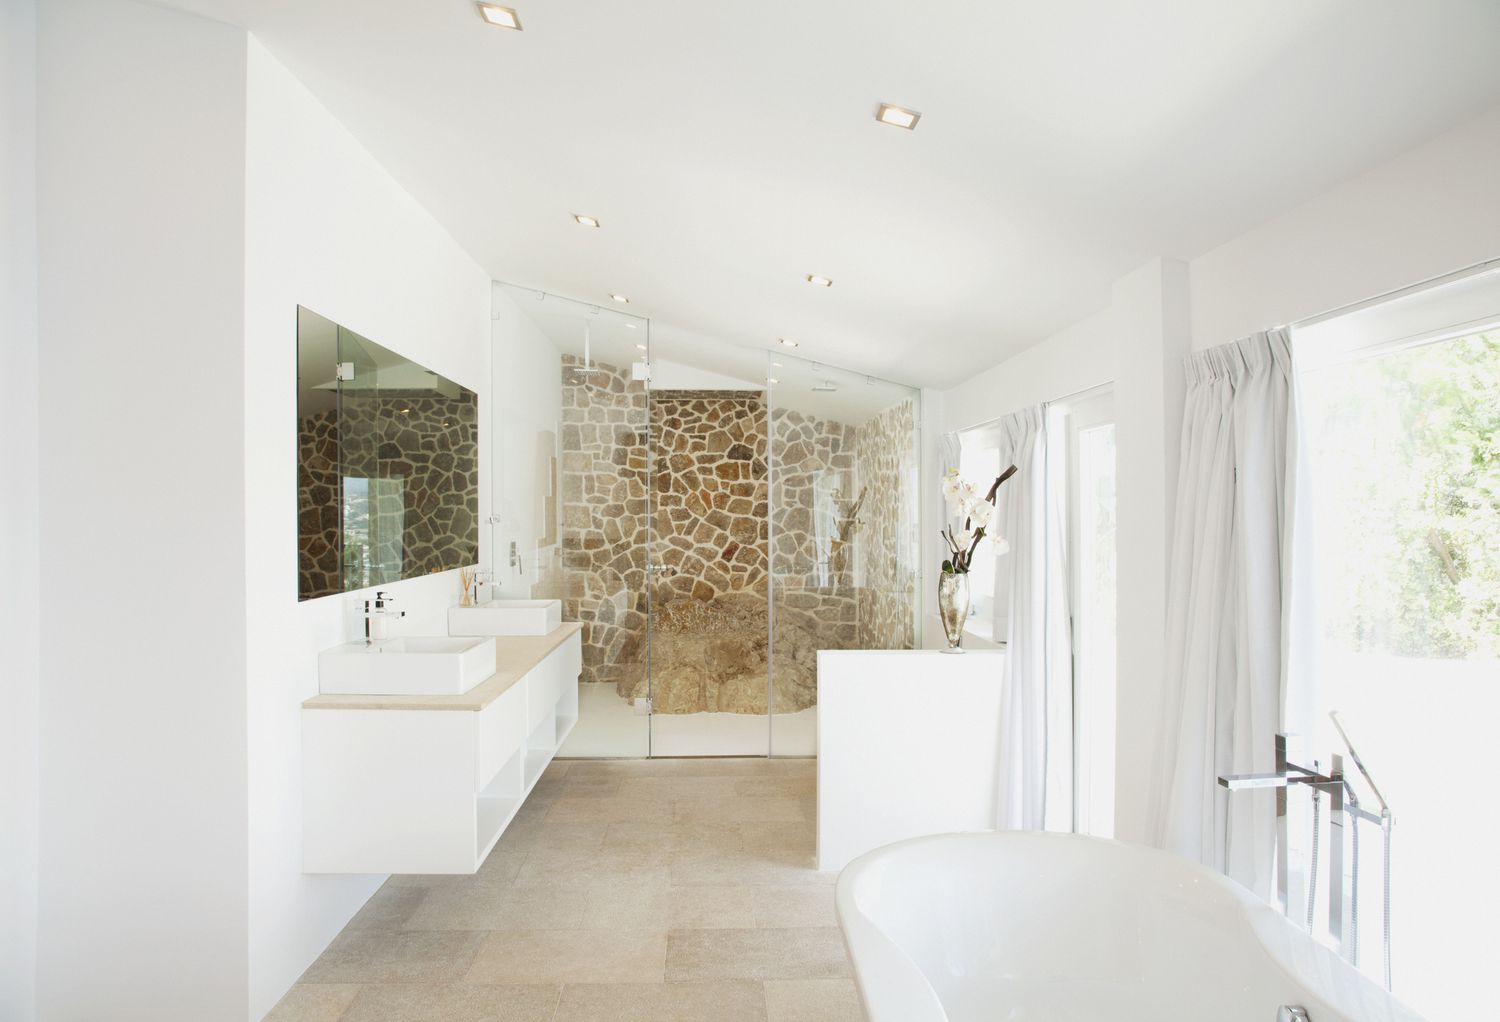 Banheiro moderno em estilo campestre francês